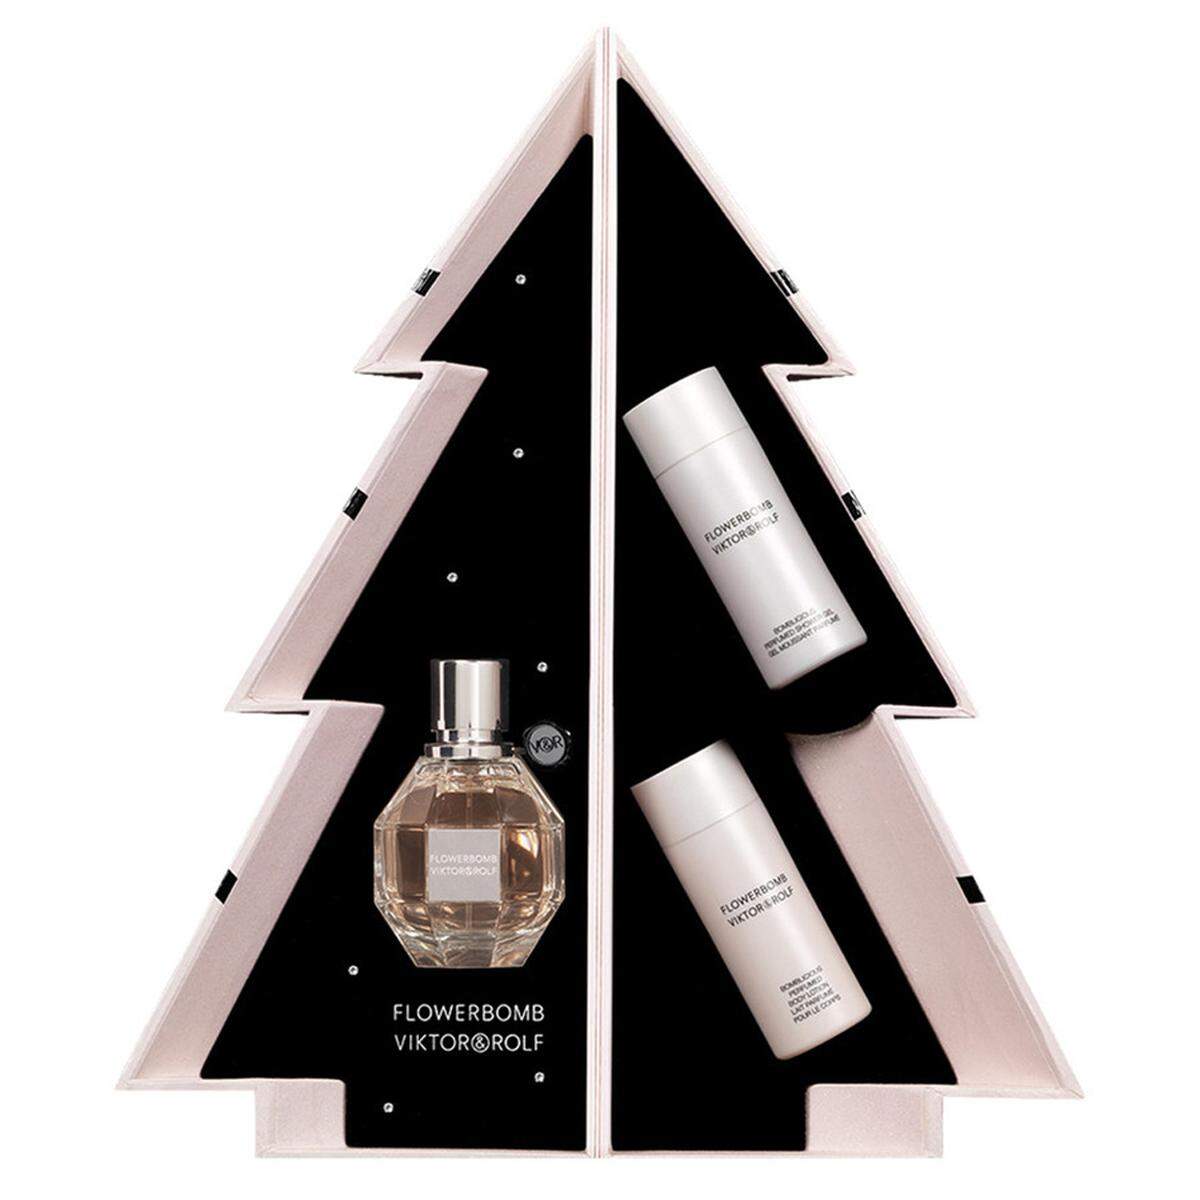 Parfums sind ein Geschenke-Klassiker unter dem Christbaum. Viktor &amp; Rolf hat ein ansprechendes Geschenk mit Duschgel und Körperlotion im Sortiment, 95,95 Euro. Im Drogeriefachhandel erhältlich.